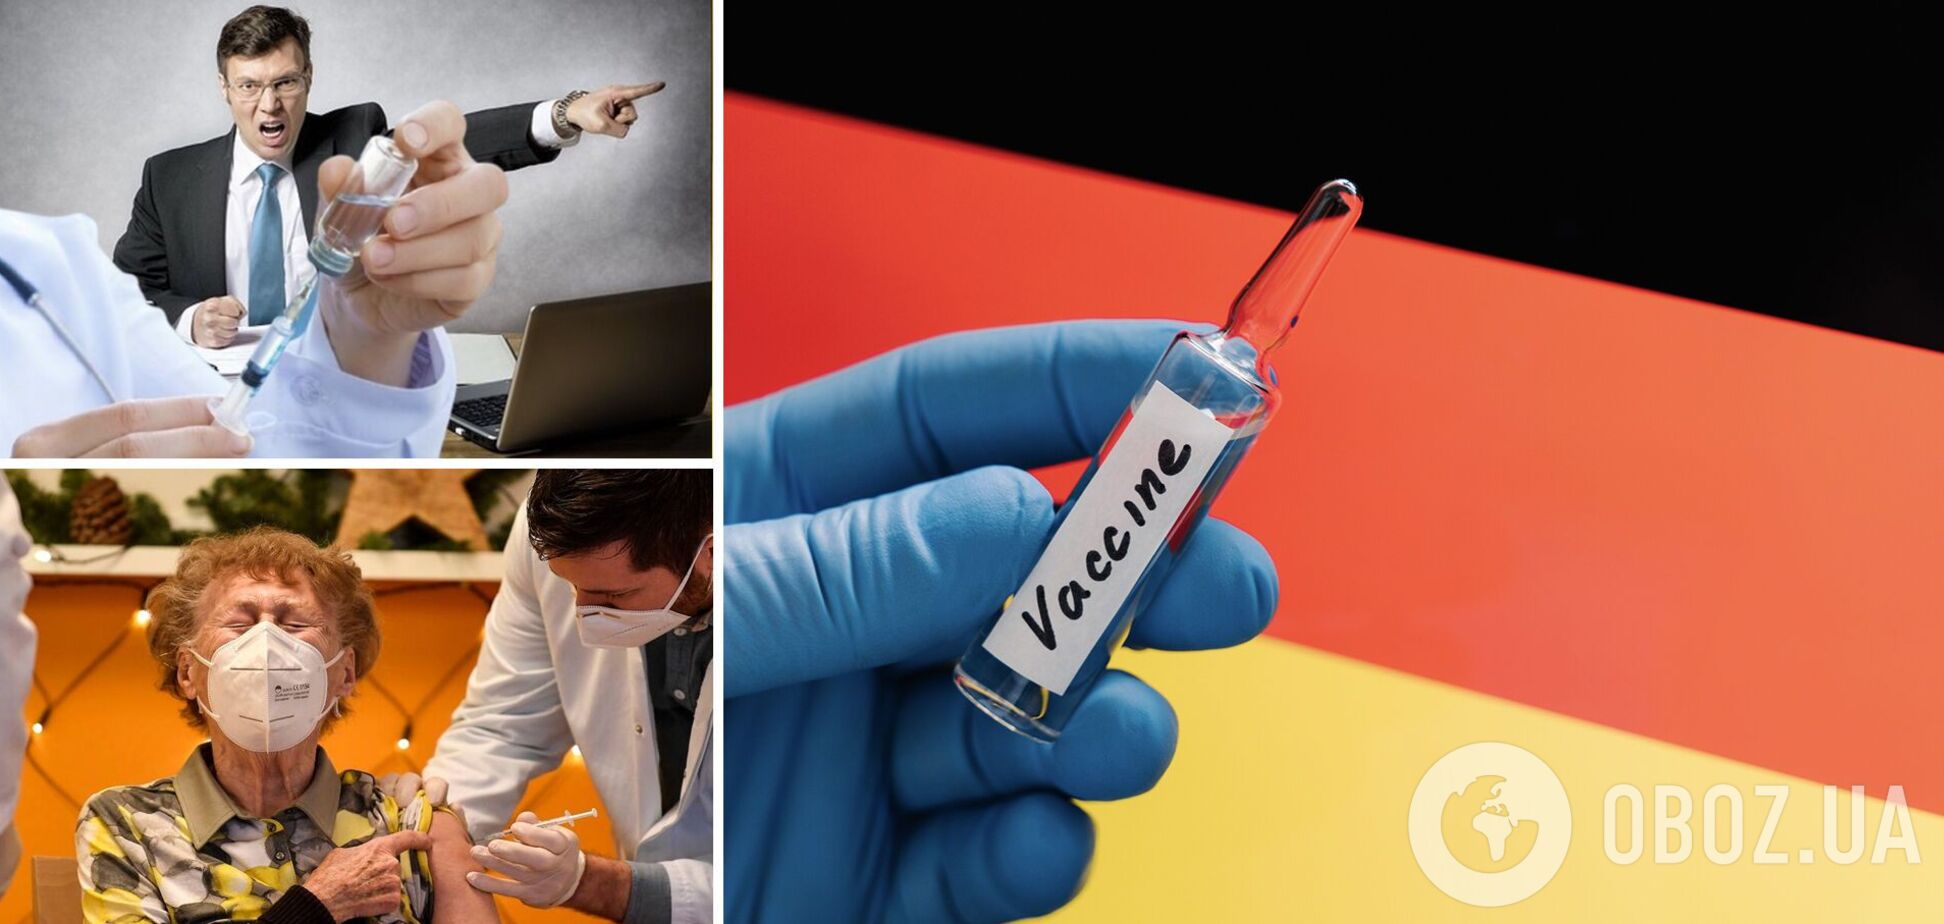 В Германии радуются вакцинации от COVID-19, но критикуют власть. Эксклюзивный рассказ украинки